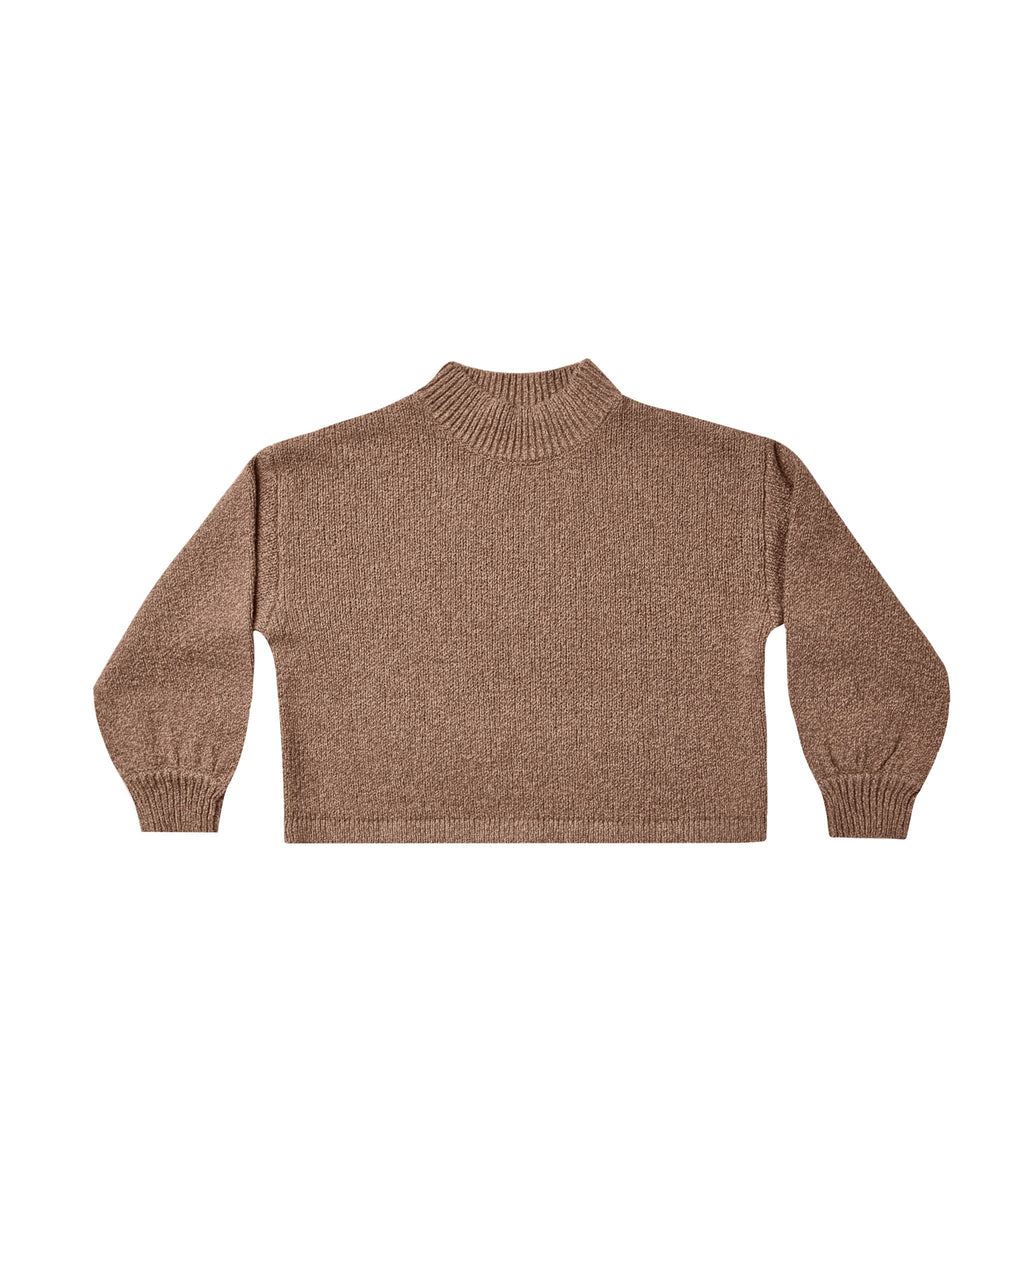 Knit Sweater || Heathered Mocha